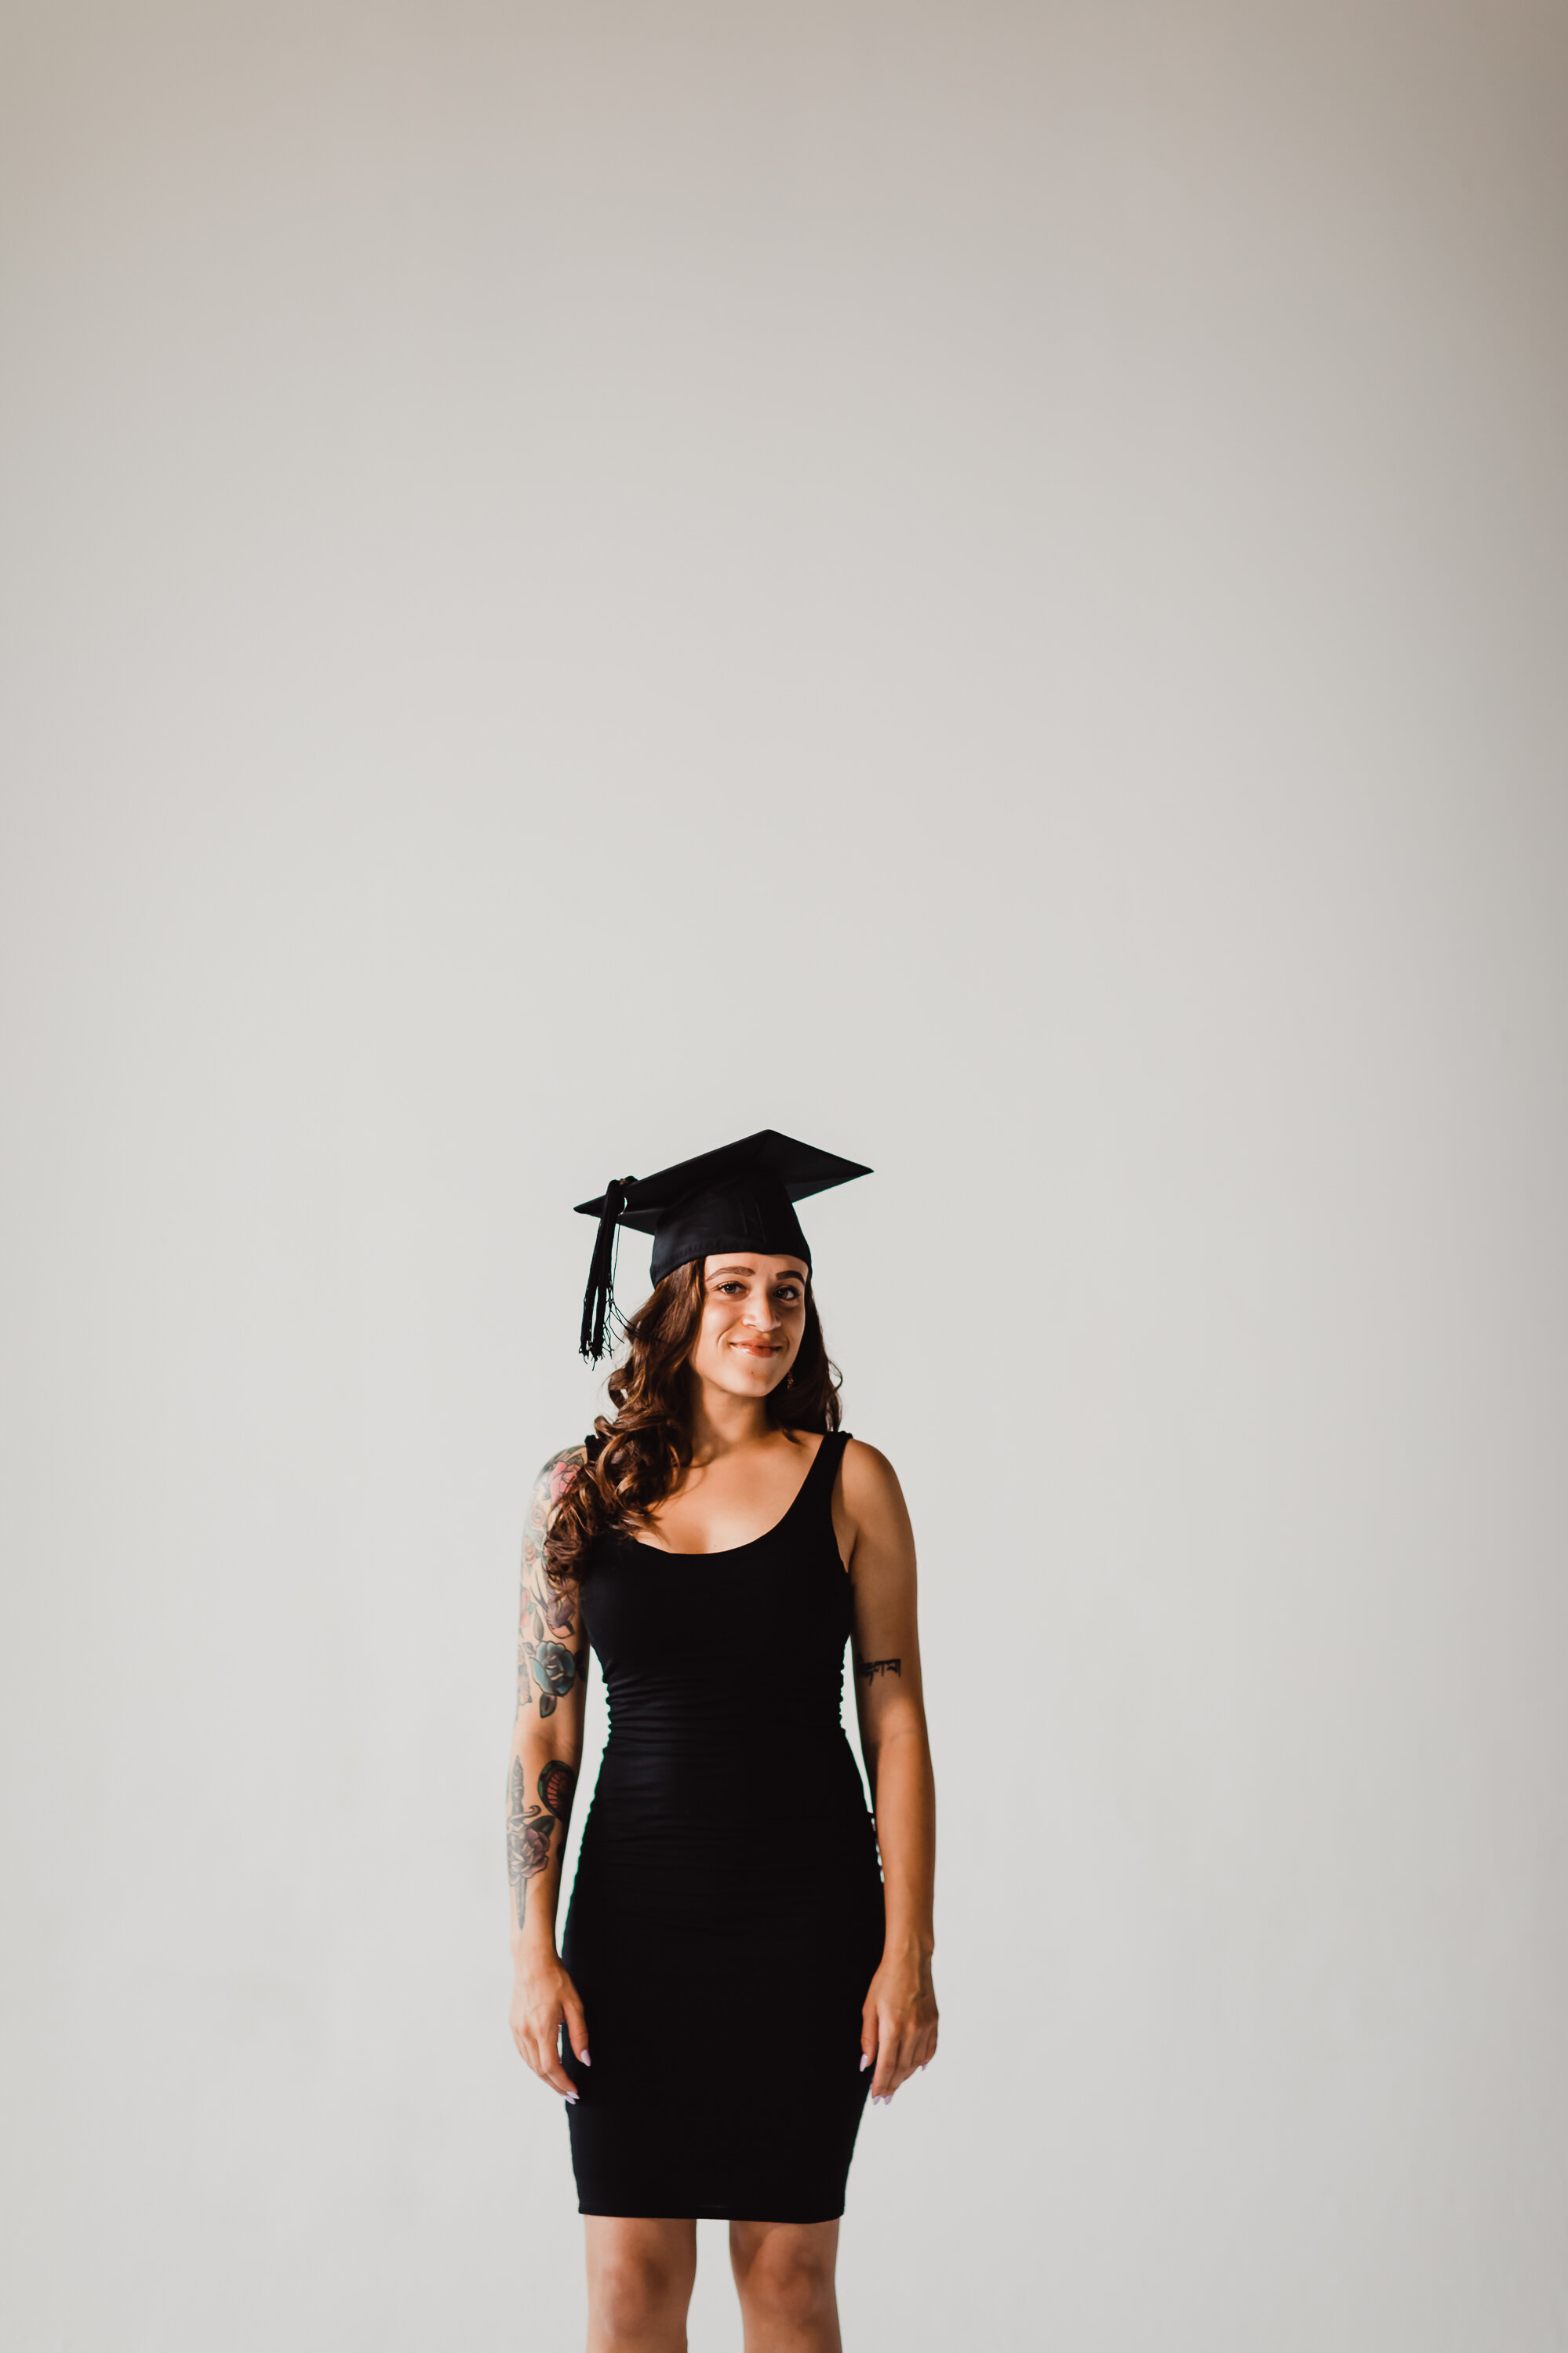 Gianna Keiko Atlanta Lifestyle Photographer_graduation portrait-31.jpg